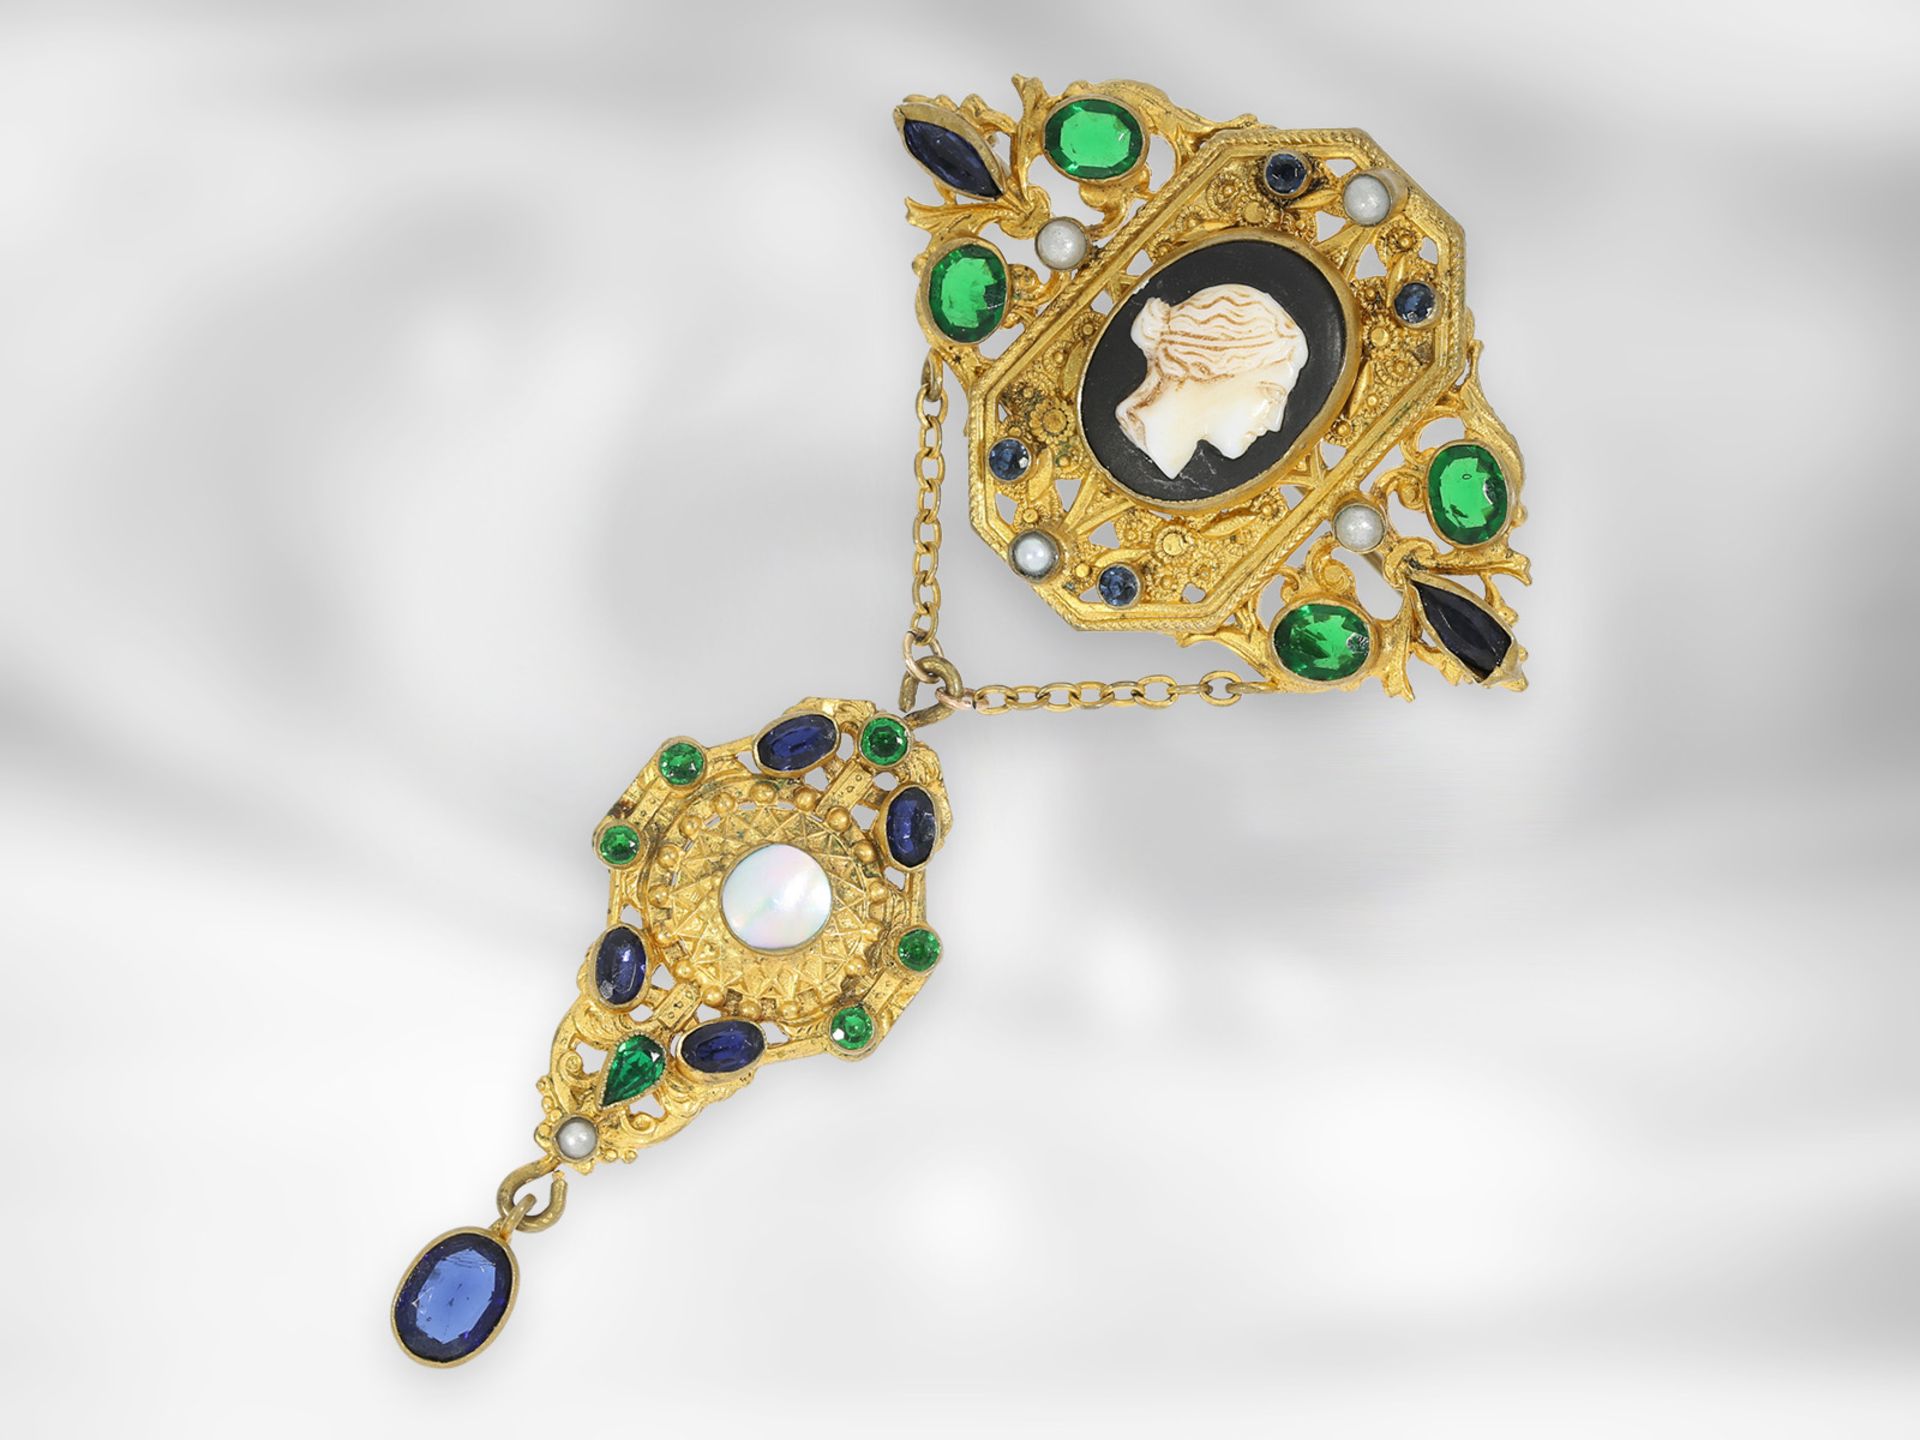 Brosche/Nadel: interessante sehr dekorative antike Brosche mit Kamee, Perlmutt, Farbsteinen und